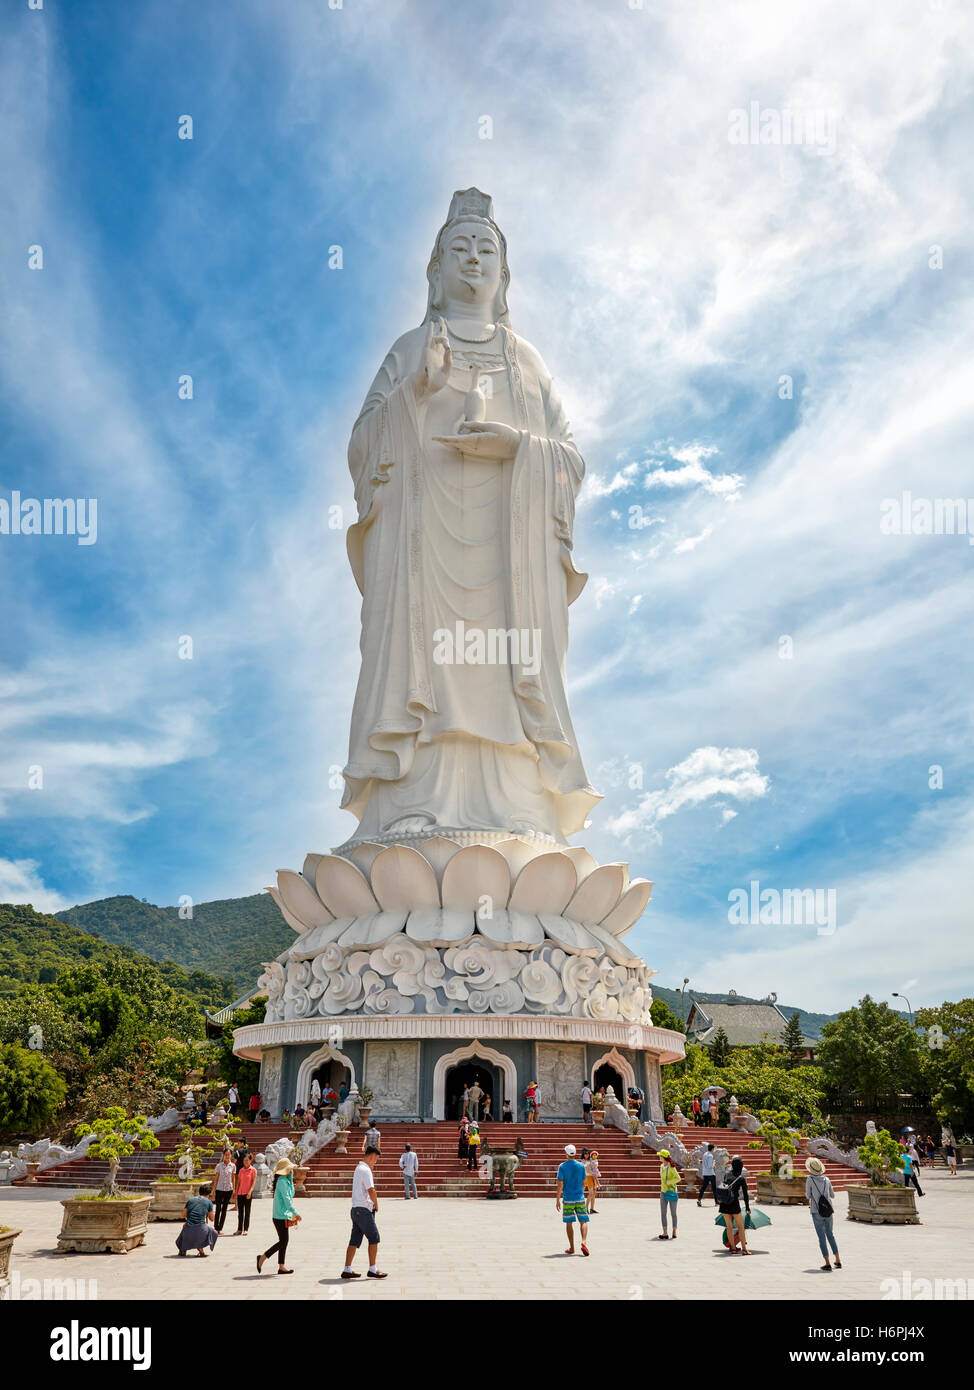 Dame géant statue de Bouddha sur la péninsule de son tra. Da nang, Vietnam. Banque D'Images